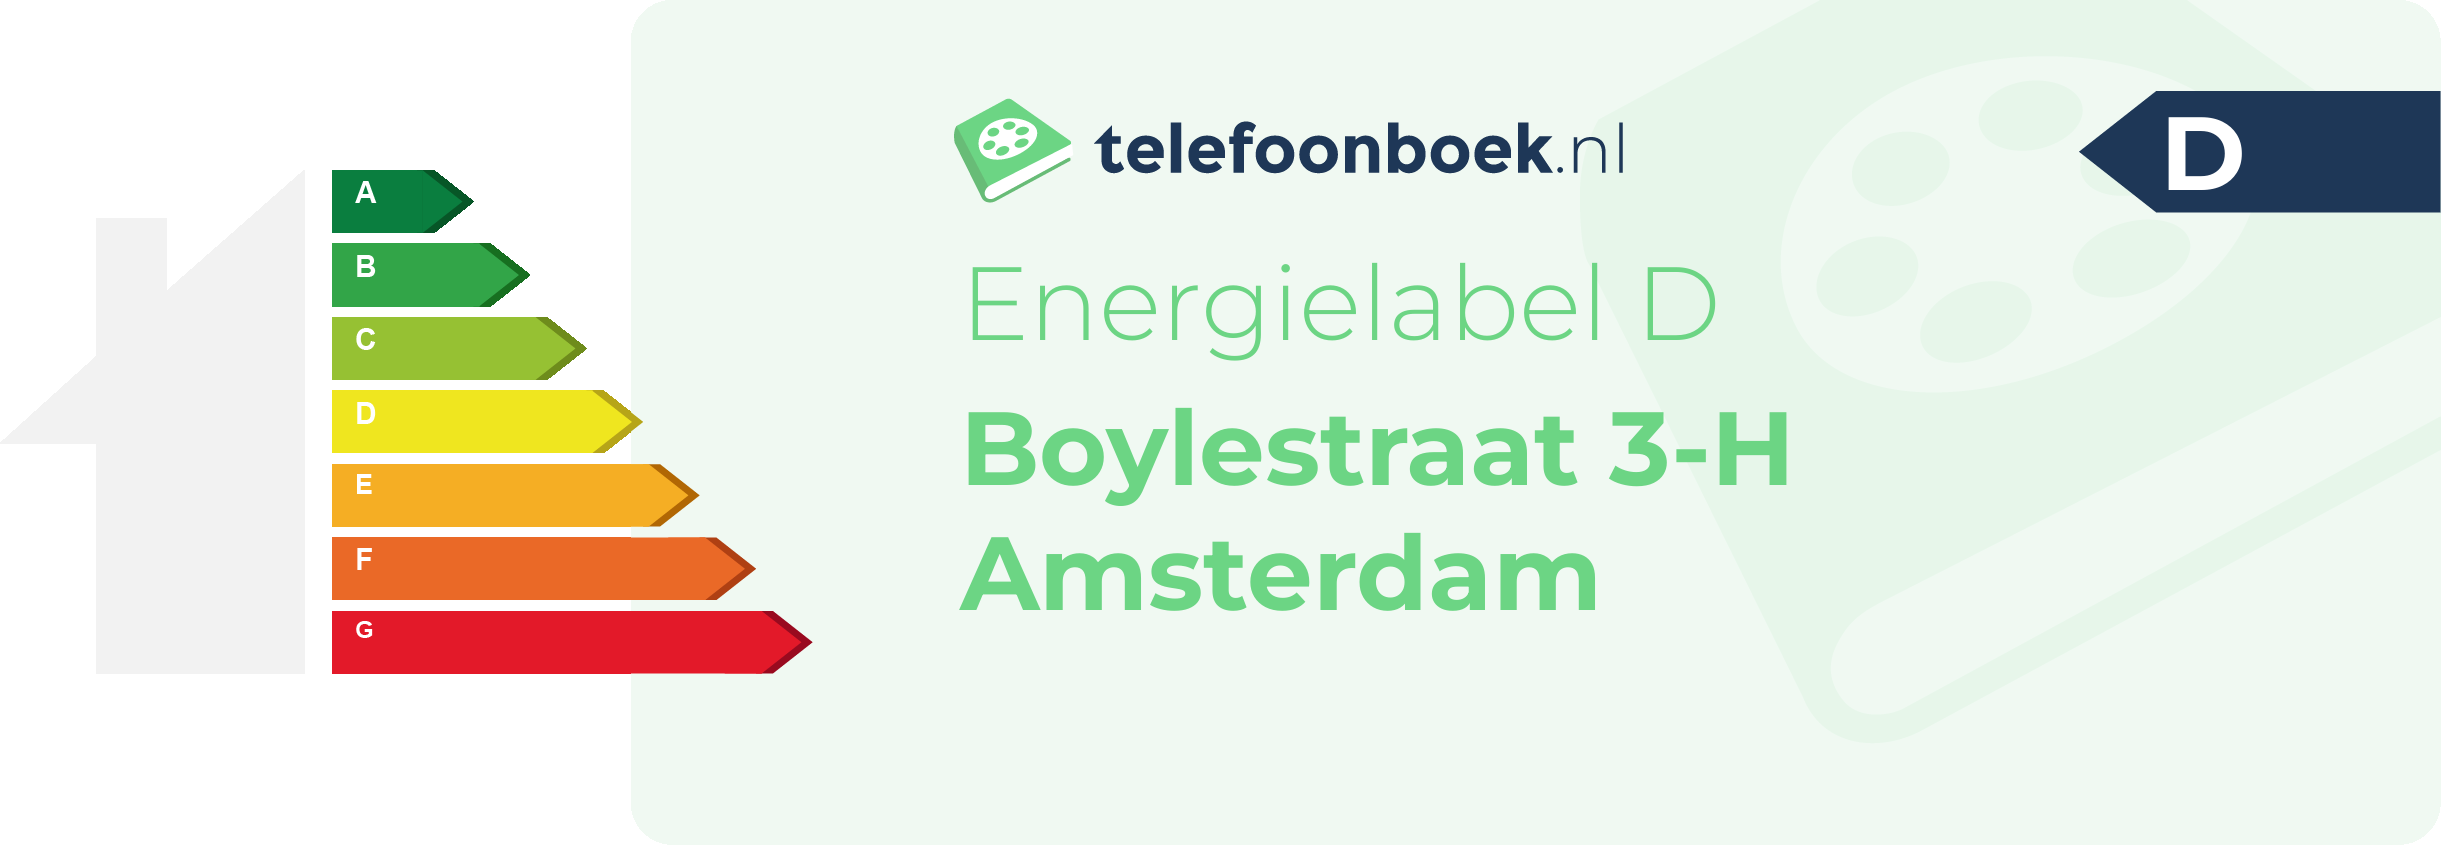 Energielabel Boylestraat 3-H Amsterdam